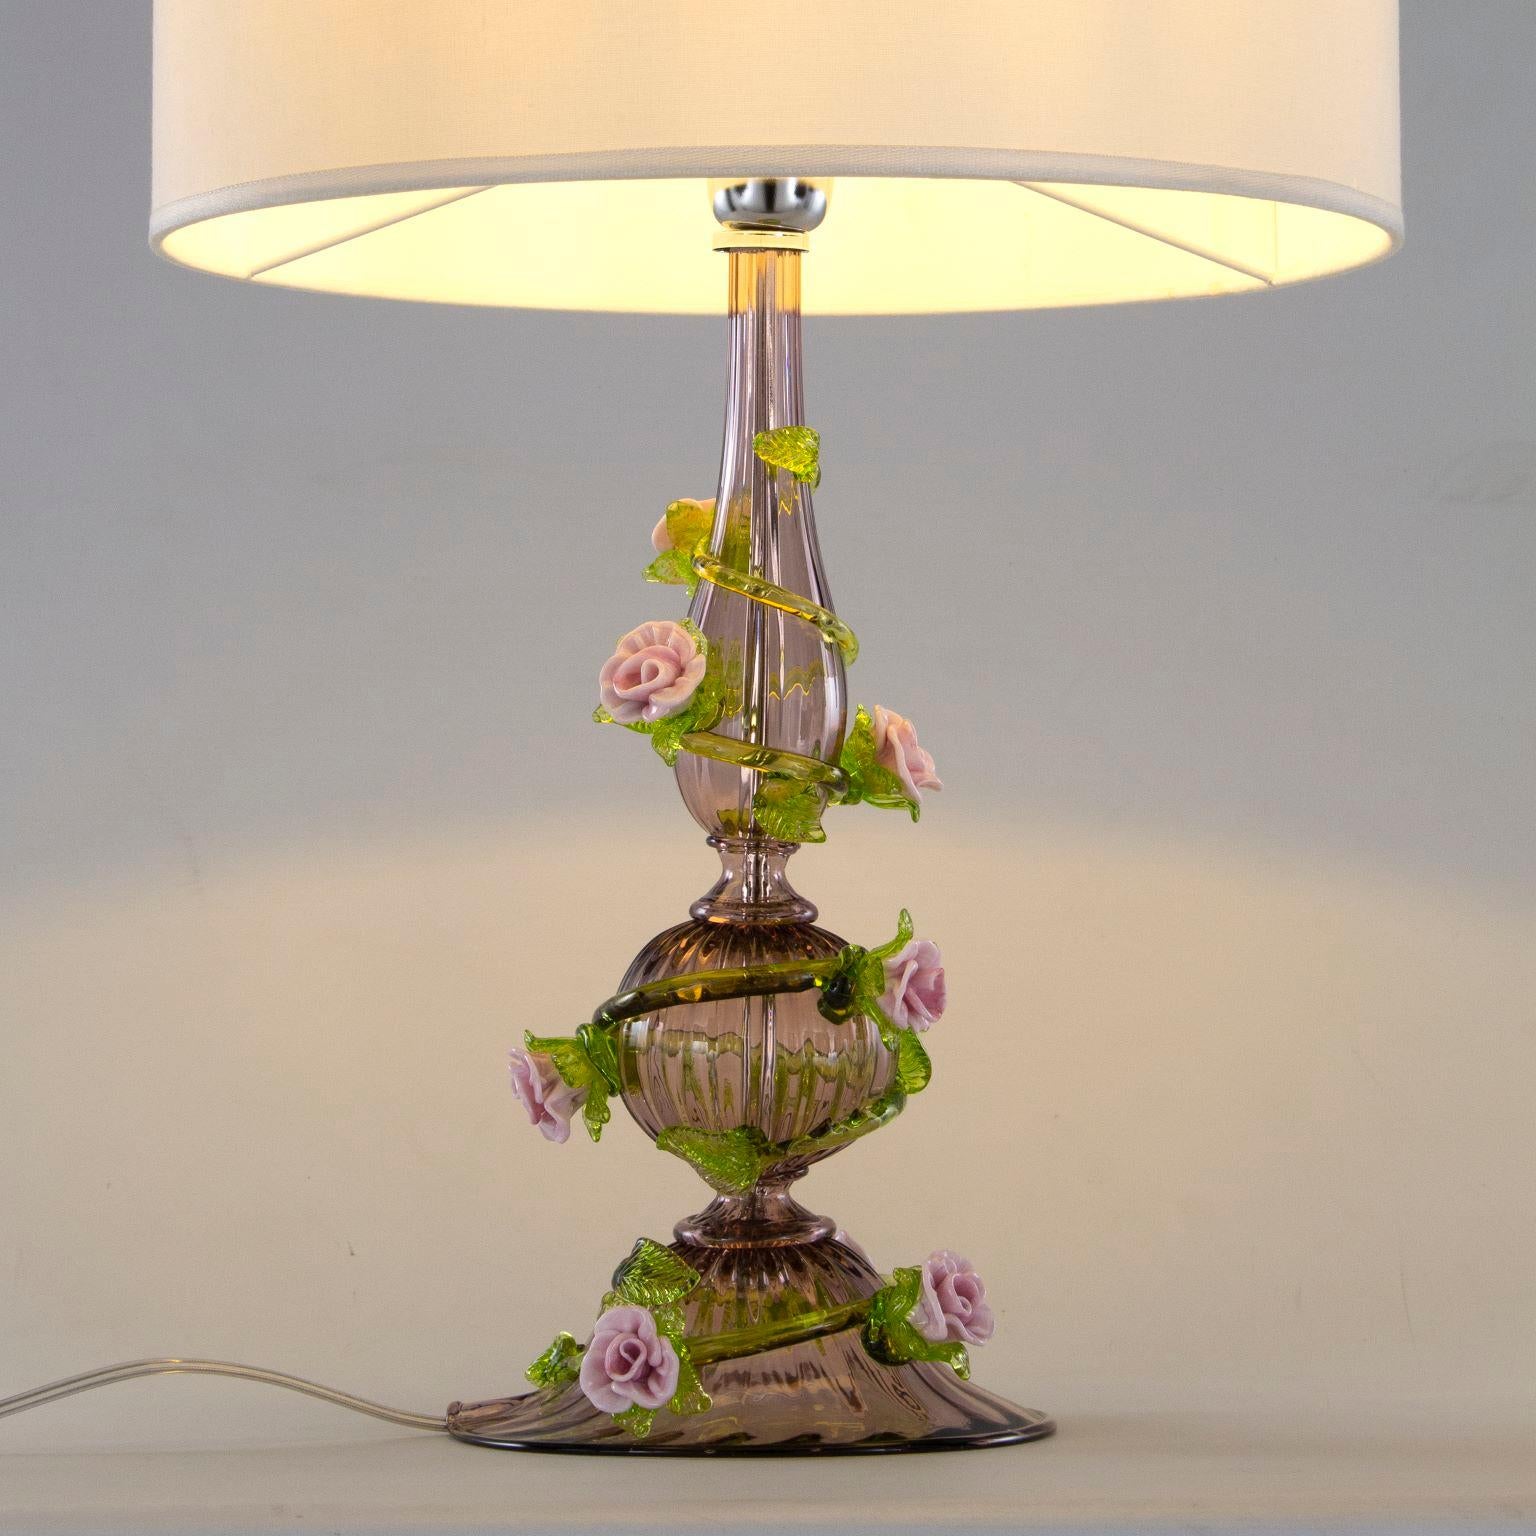 Rosae Rosarum Garden est une lampe de table à 1 lumière, de couleur améthyste avec des détails en pâte vitrifiée verte et rose. Un abat-jour en tissu blanc de forme rectangulaire recouvre l'ampoule. Il s'agit d'une lampe de table romantique et aux